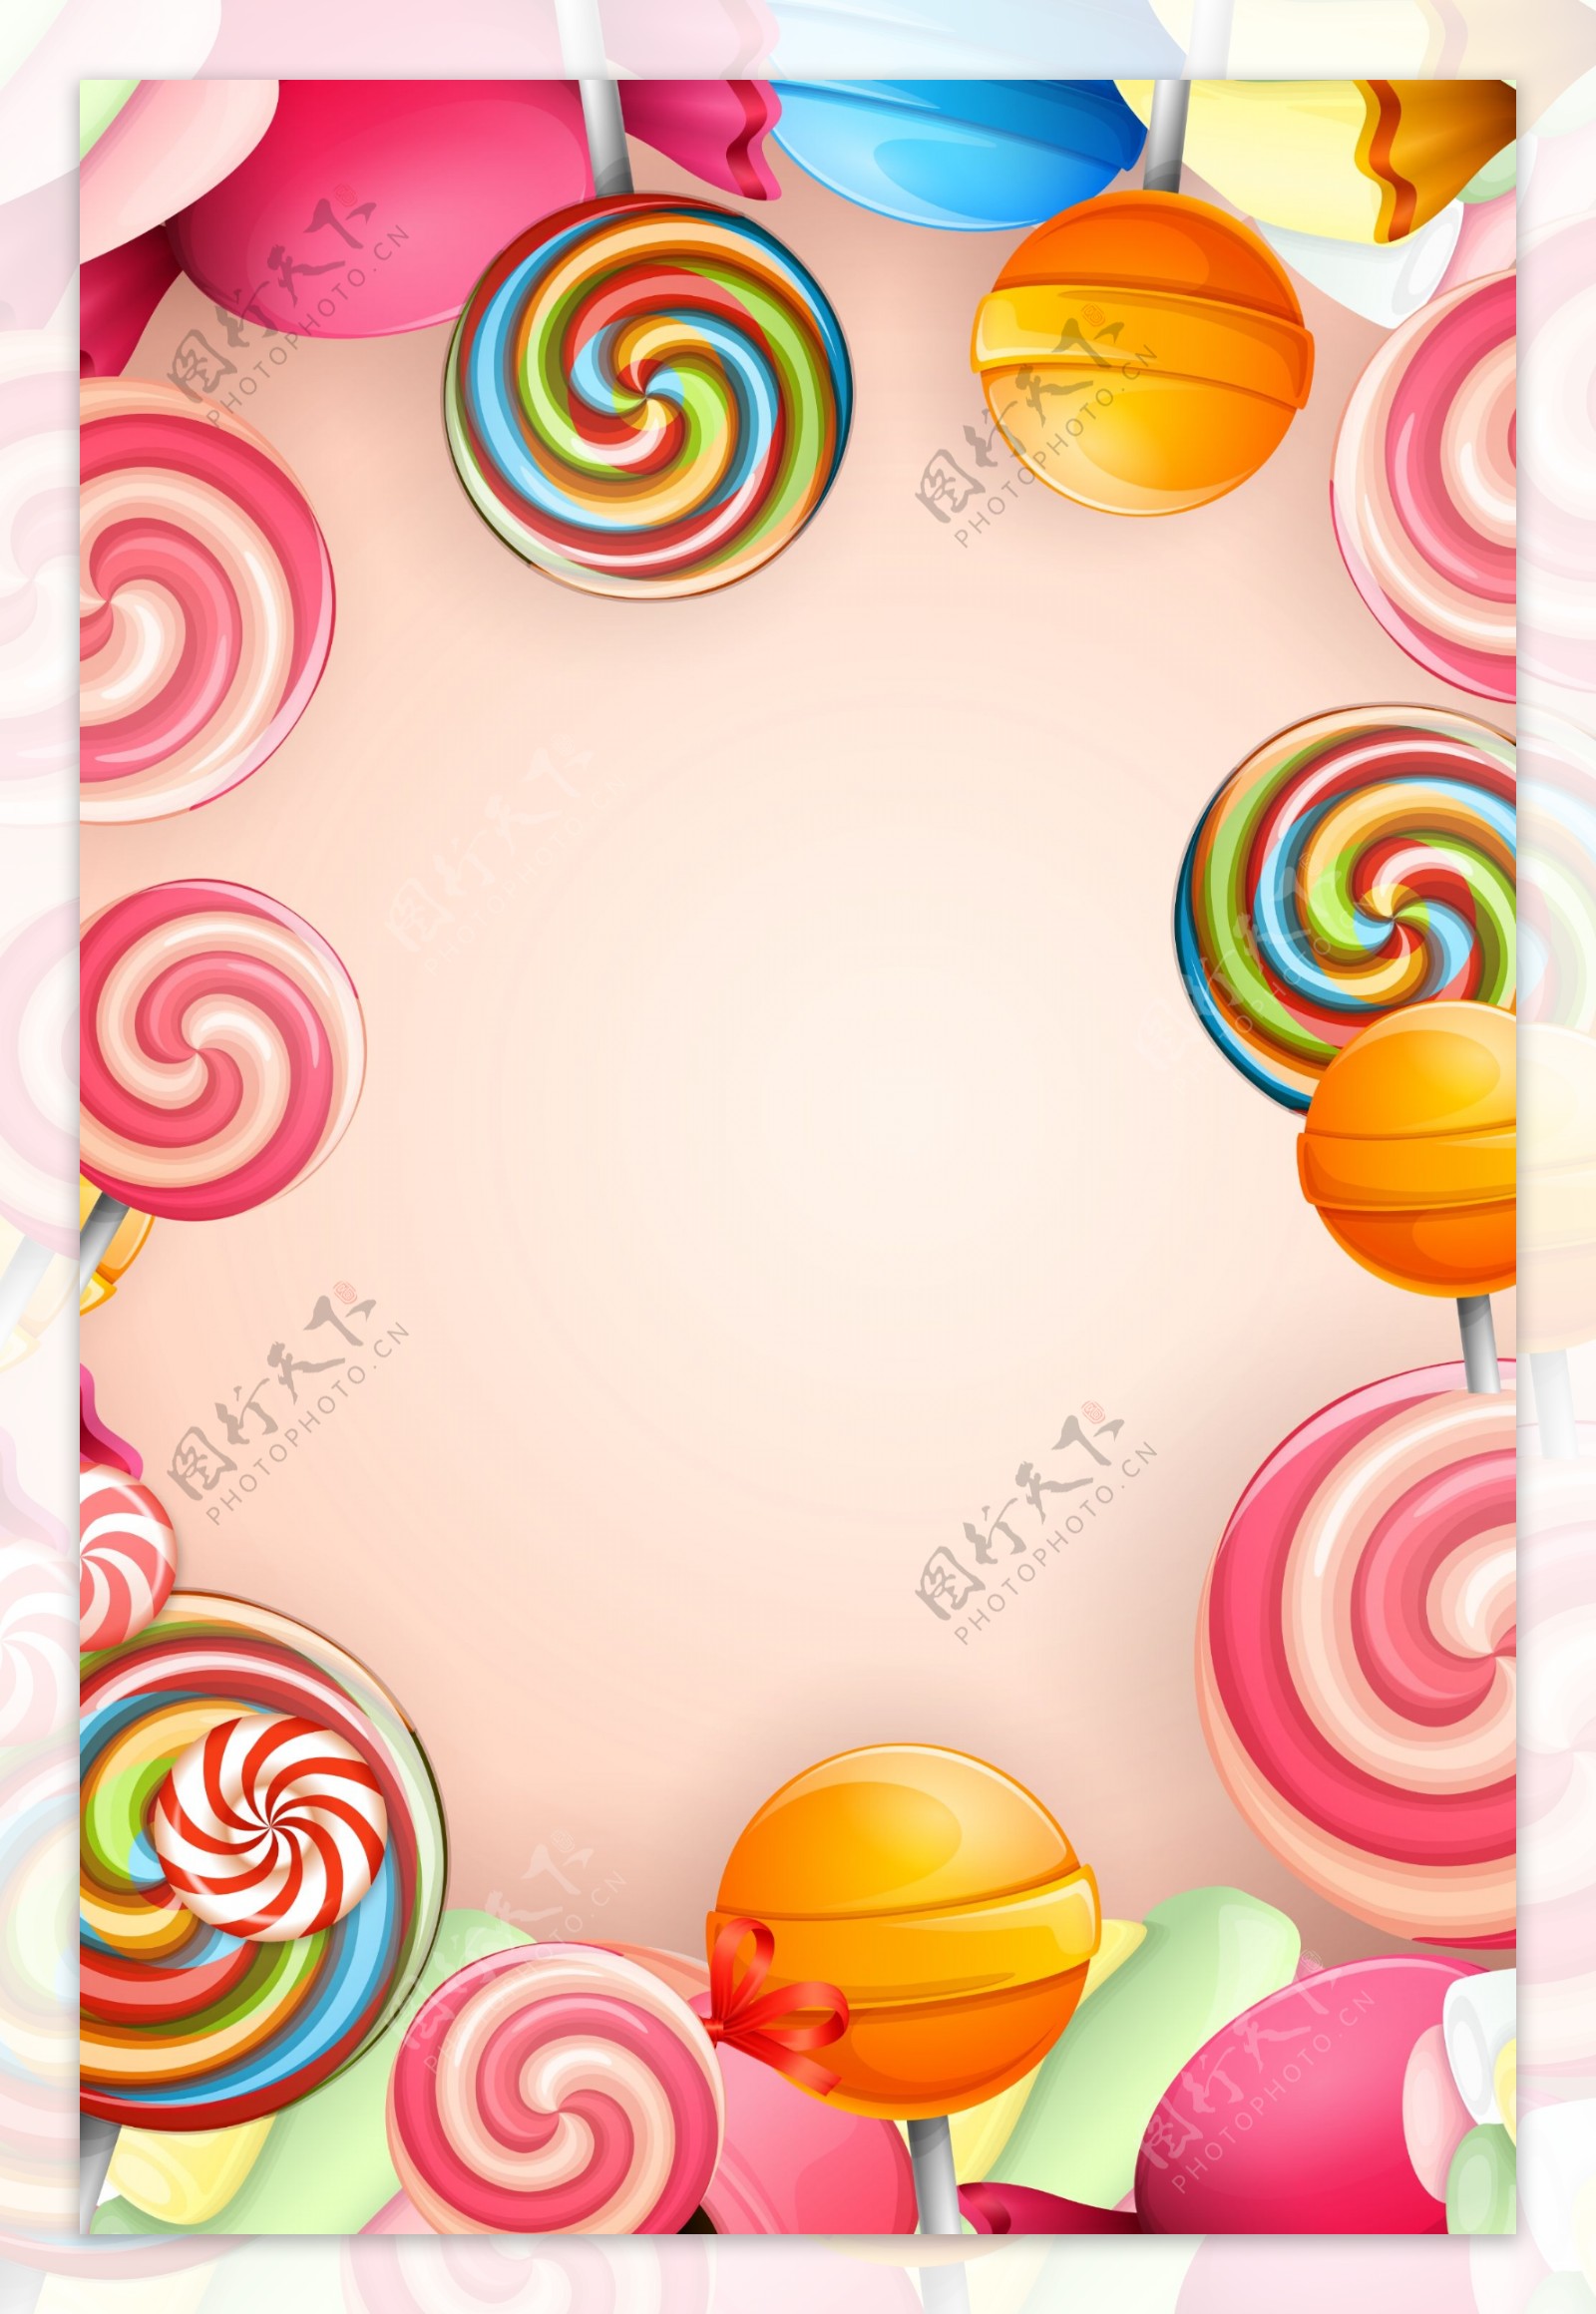 彩色棒棒糖新品海报背景素材